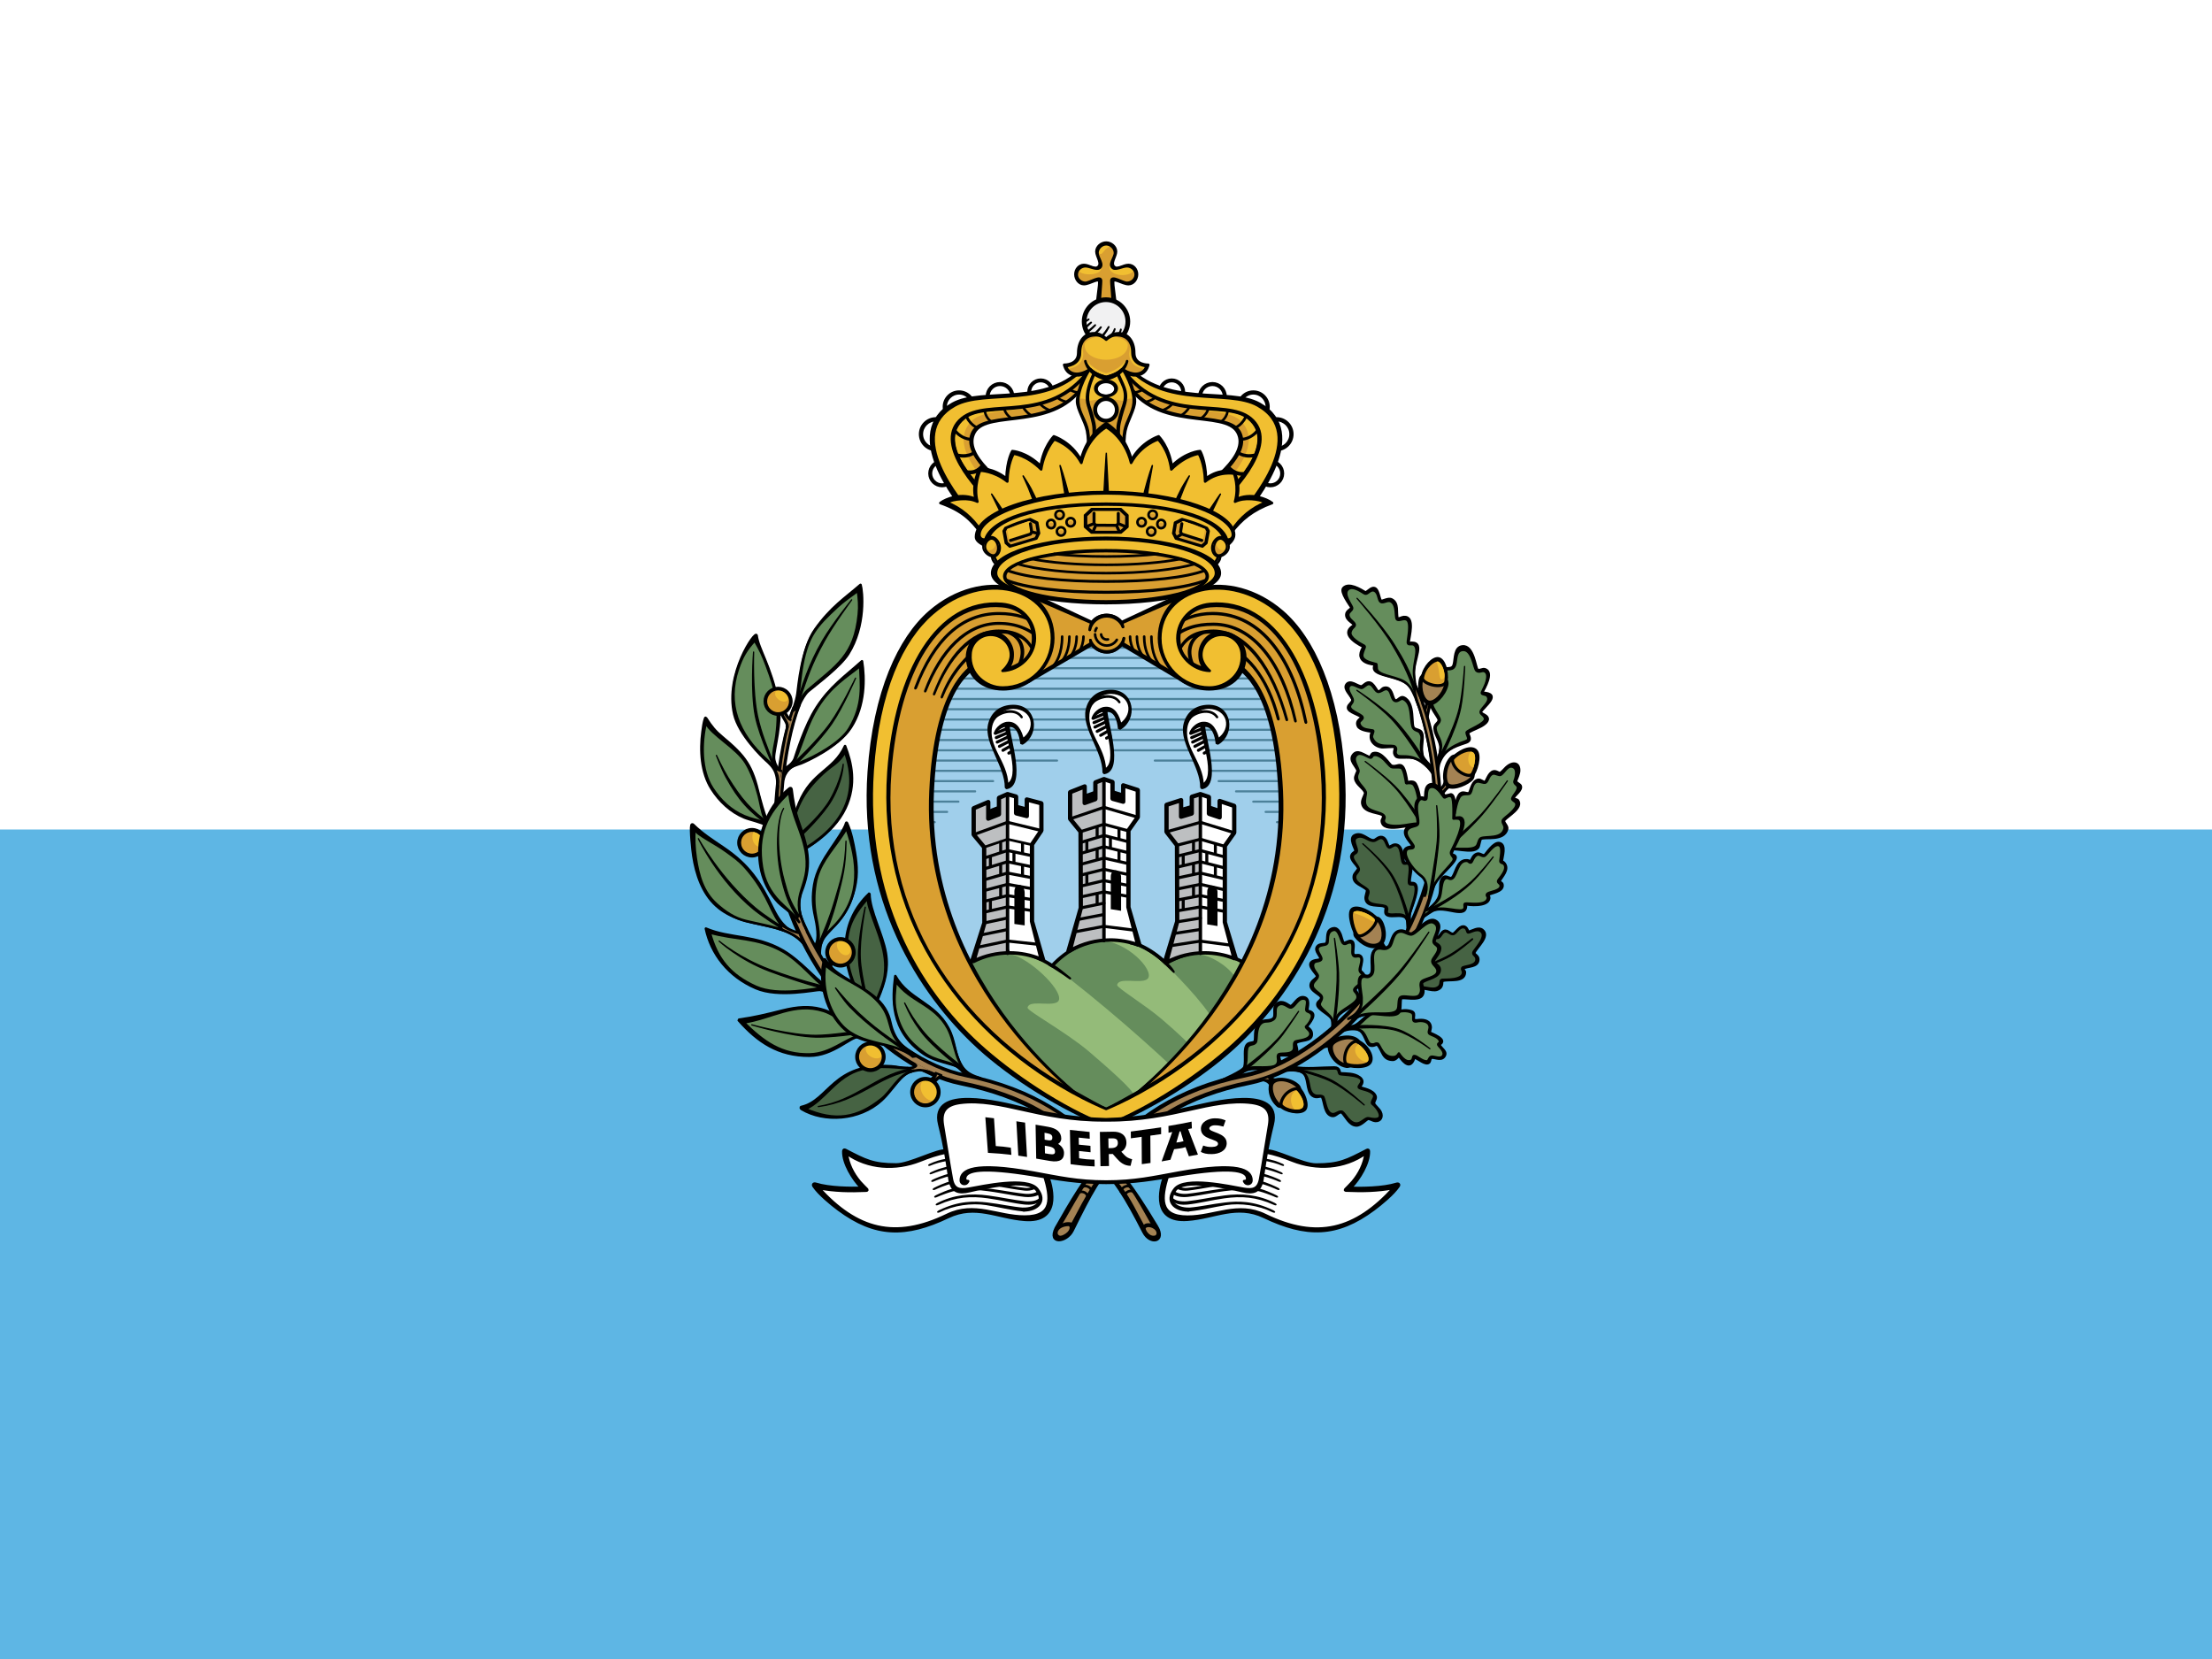 San Marino Flag Image - Free Download